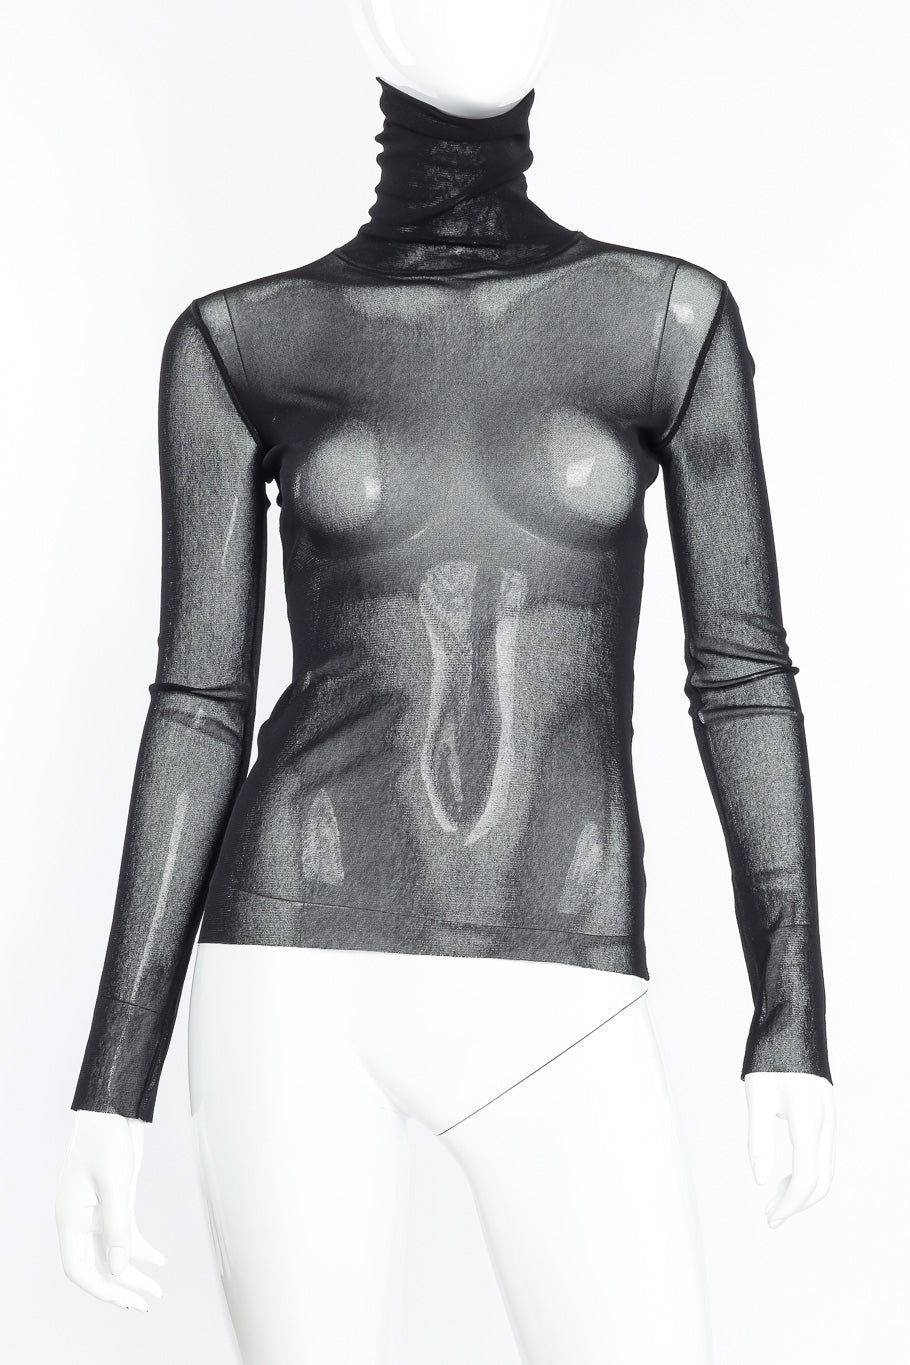 Vintage Jean Paul Gaultier Soleil Mesh Turtleneck front view on mannequin closeup @Recessla